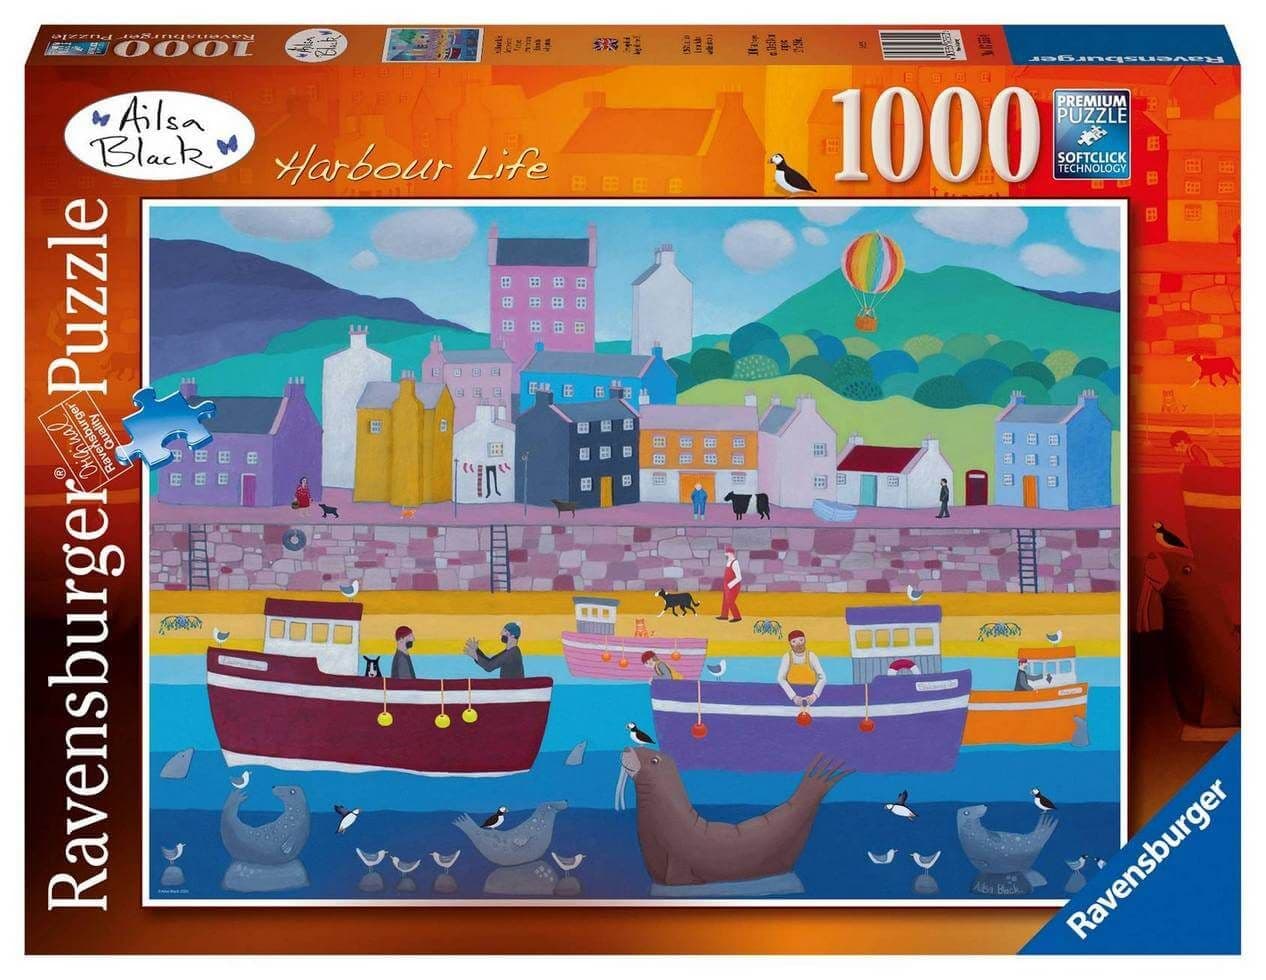 Ravensburger - Ailsa Black Harbour Life - 1000 Piece Jigsaw Puzzle